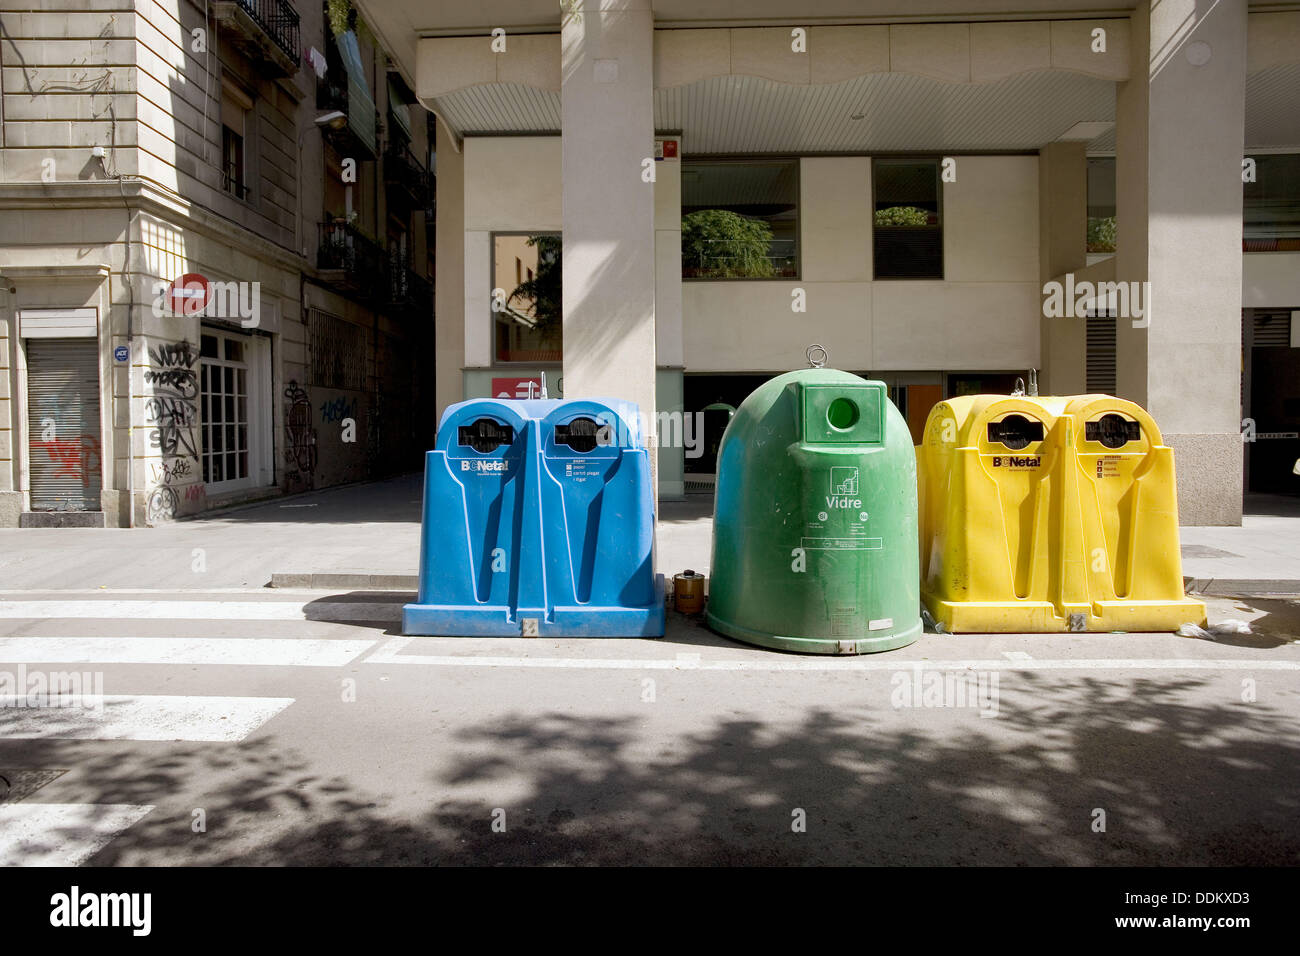 Conteneurs pour l'reciclying de papier, plastique et verre. Barcelone. L'Espagne. Banque D'Images